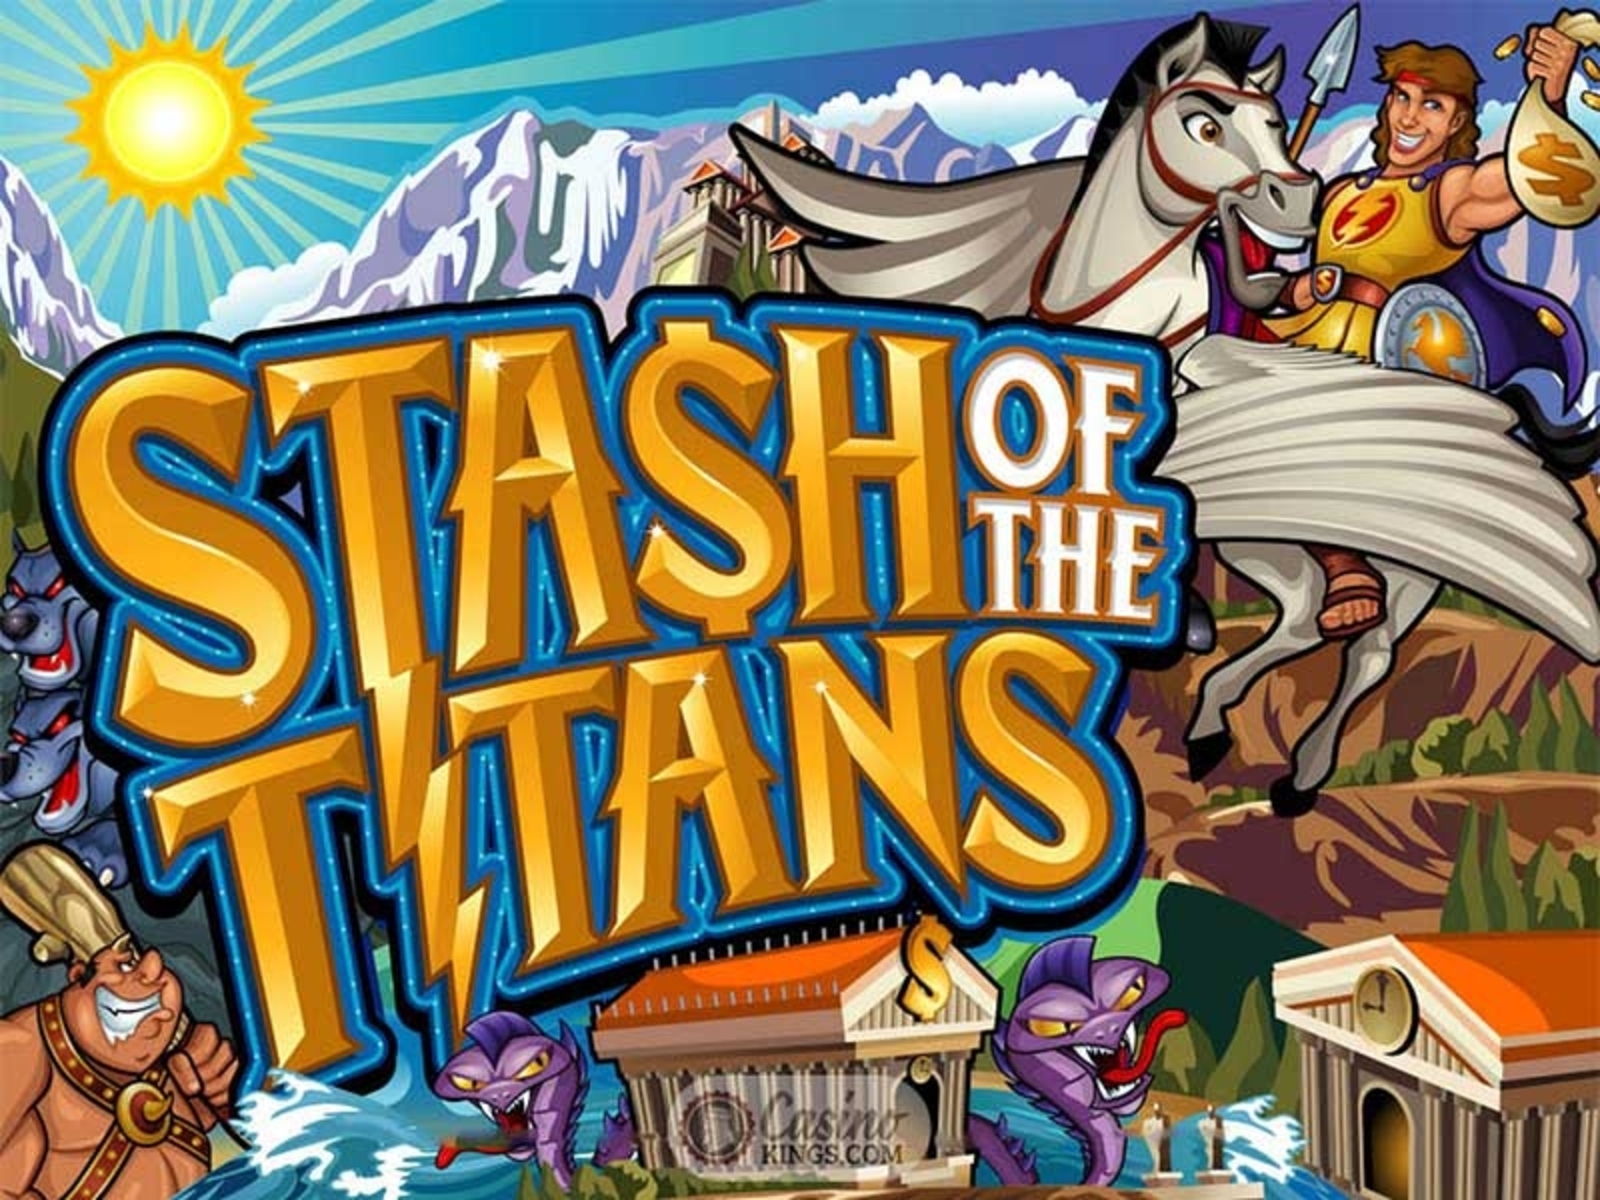 Stash of the Titans demo